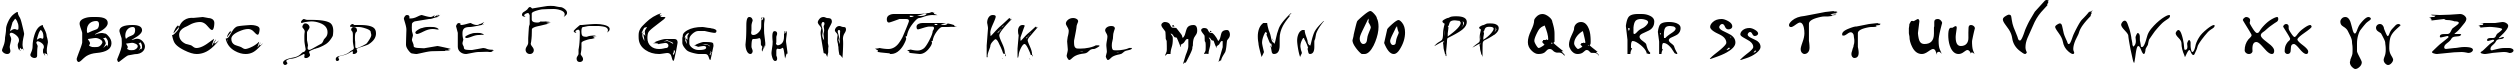 Пример написания английского алфавита шрифтом FloydianCyr